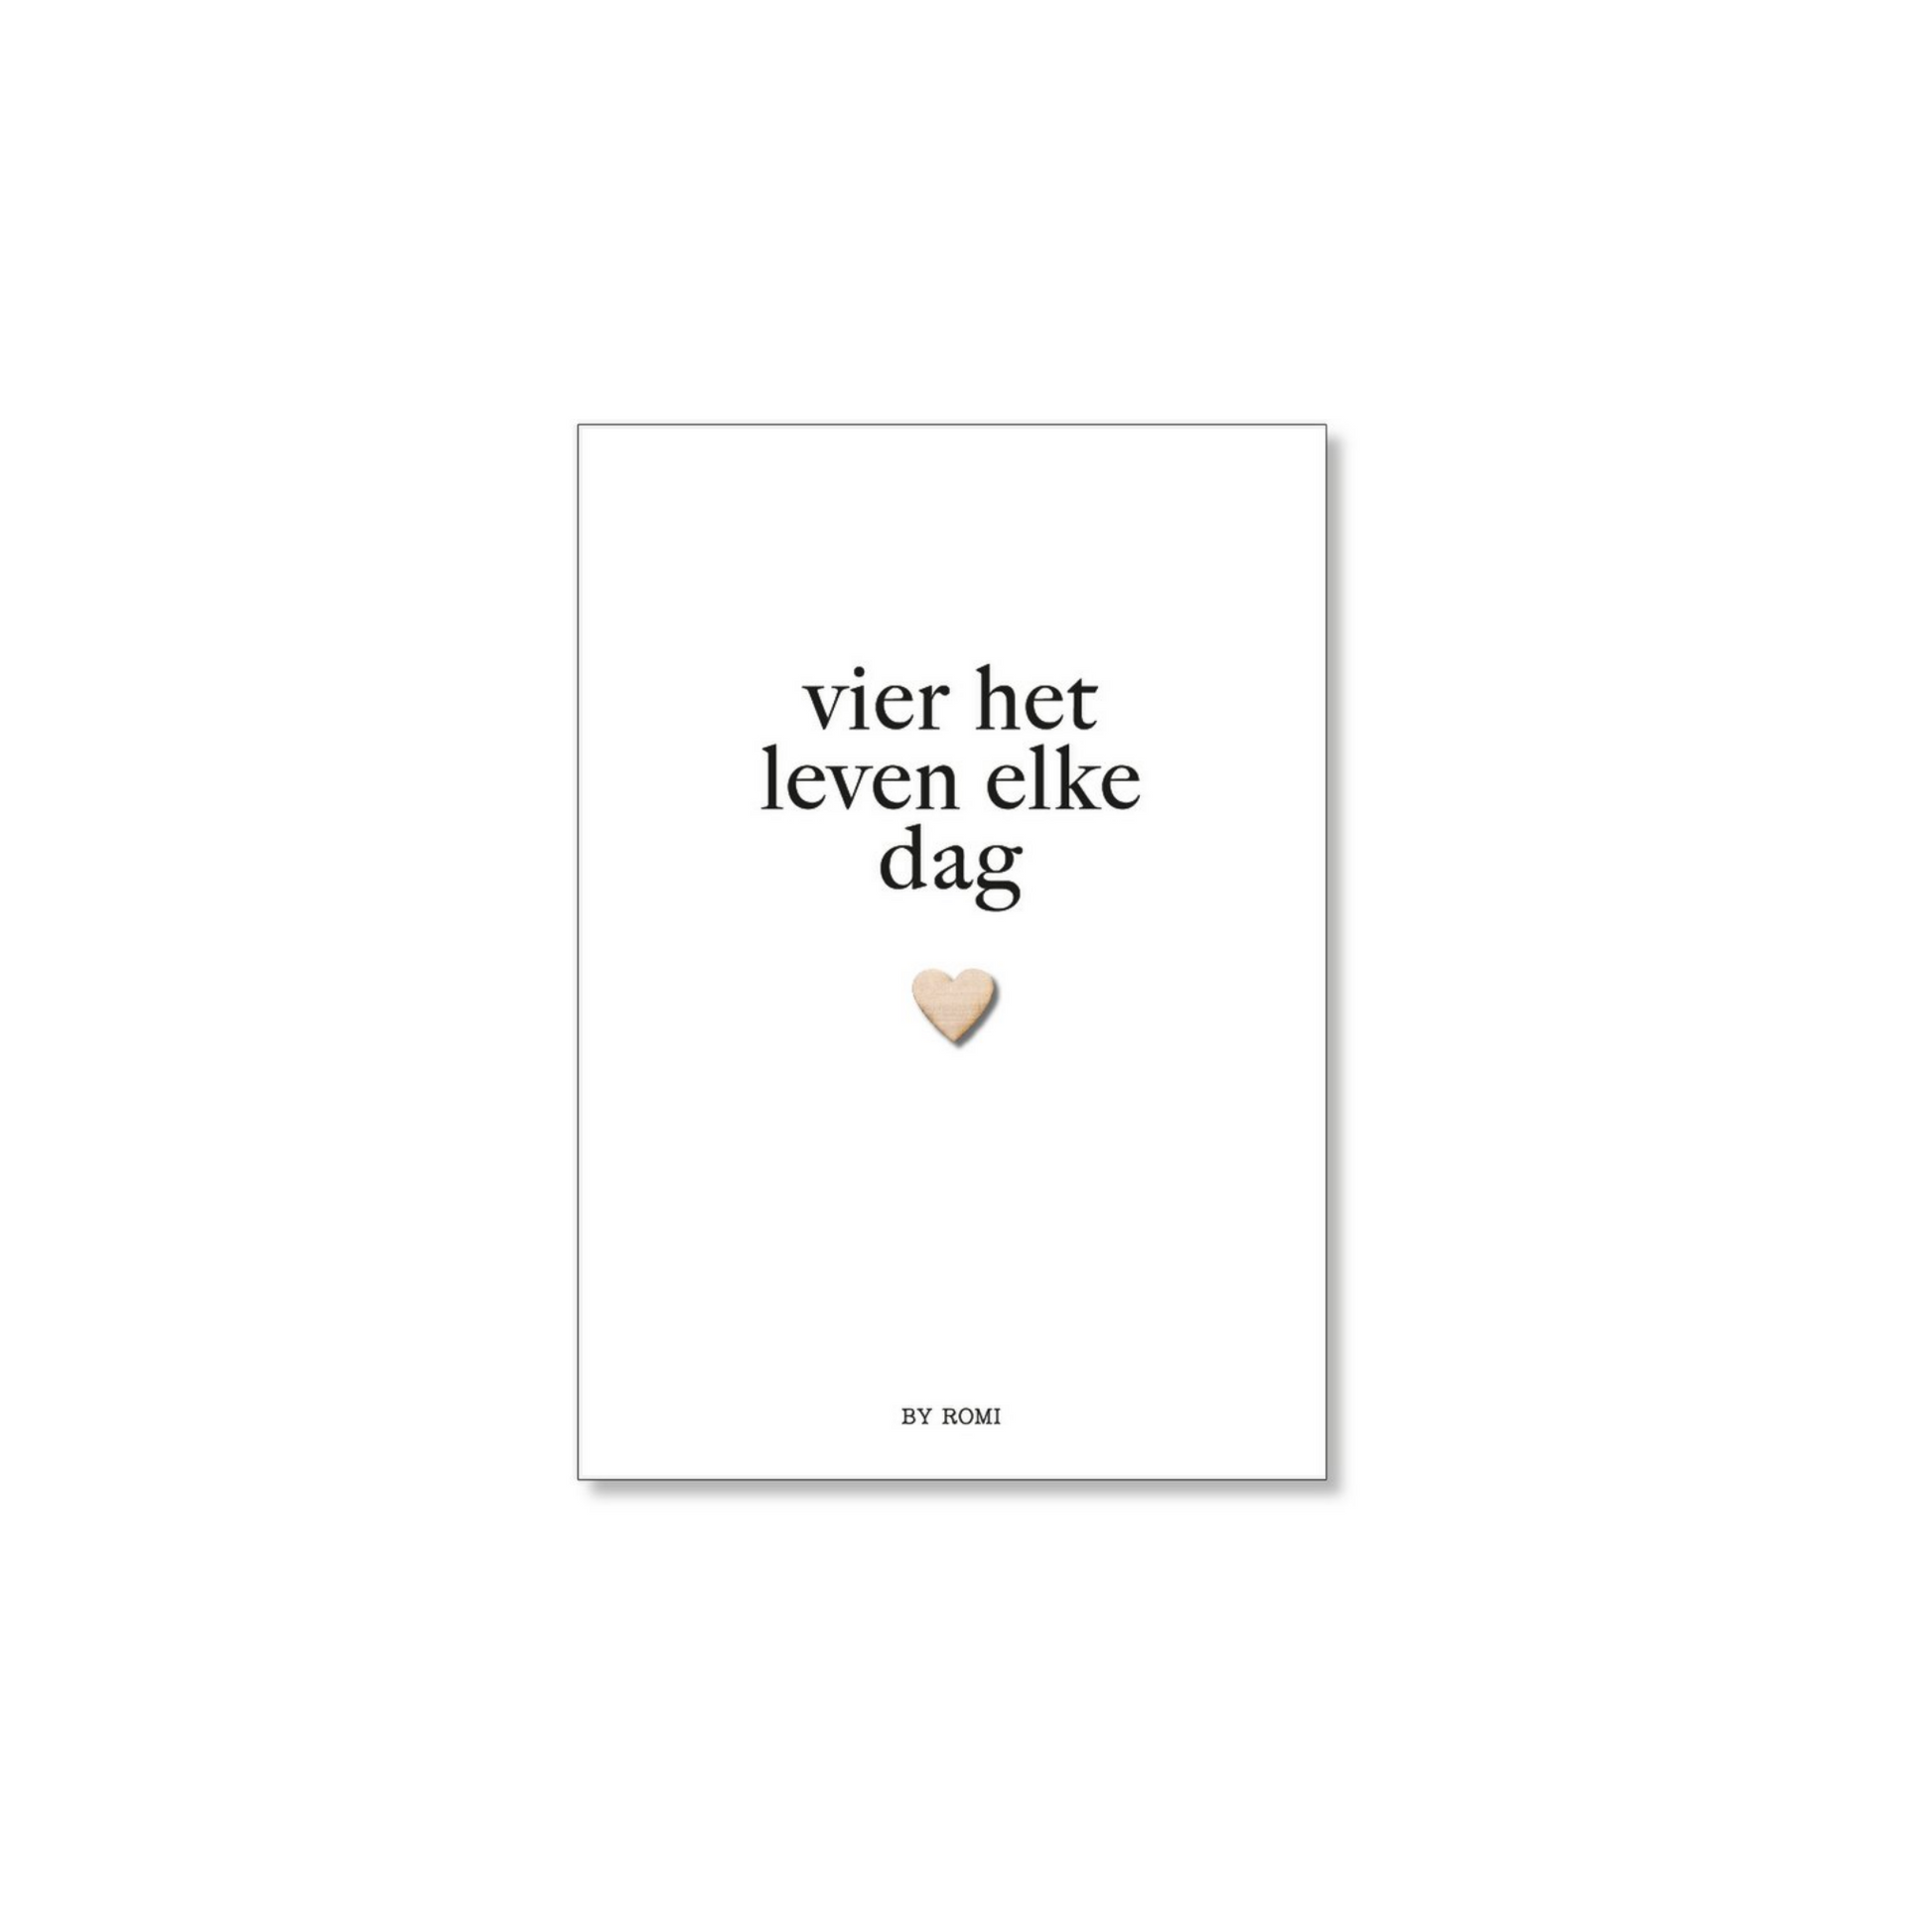 By Romi | Witte A6-kaart met houten hartje en de tekst ‘vier het leven elke dag’